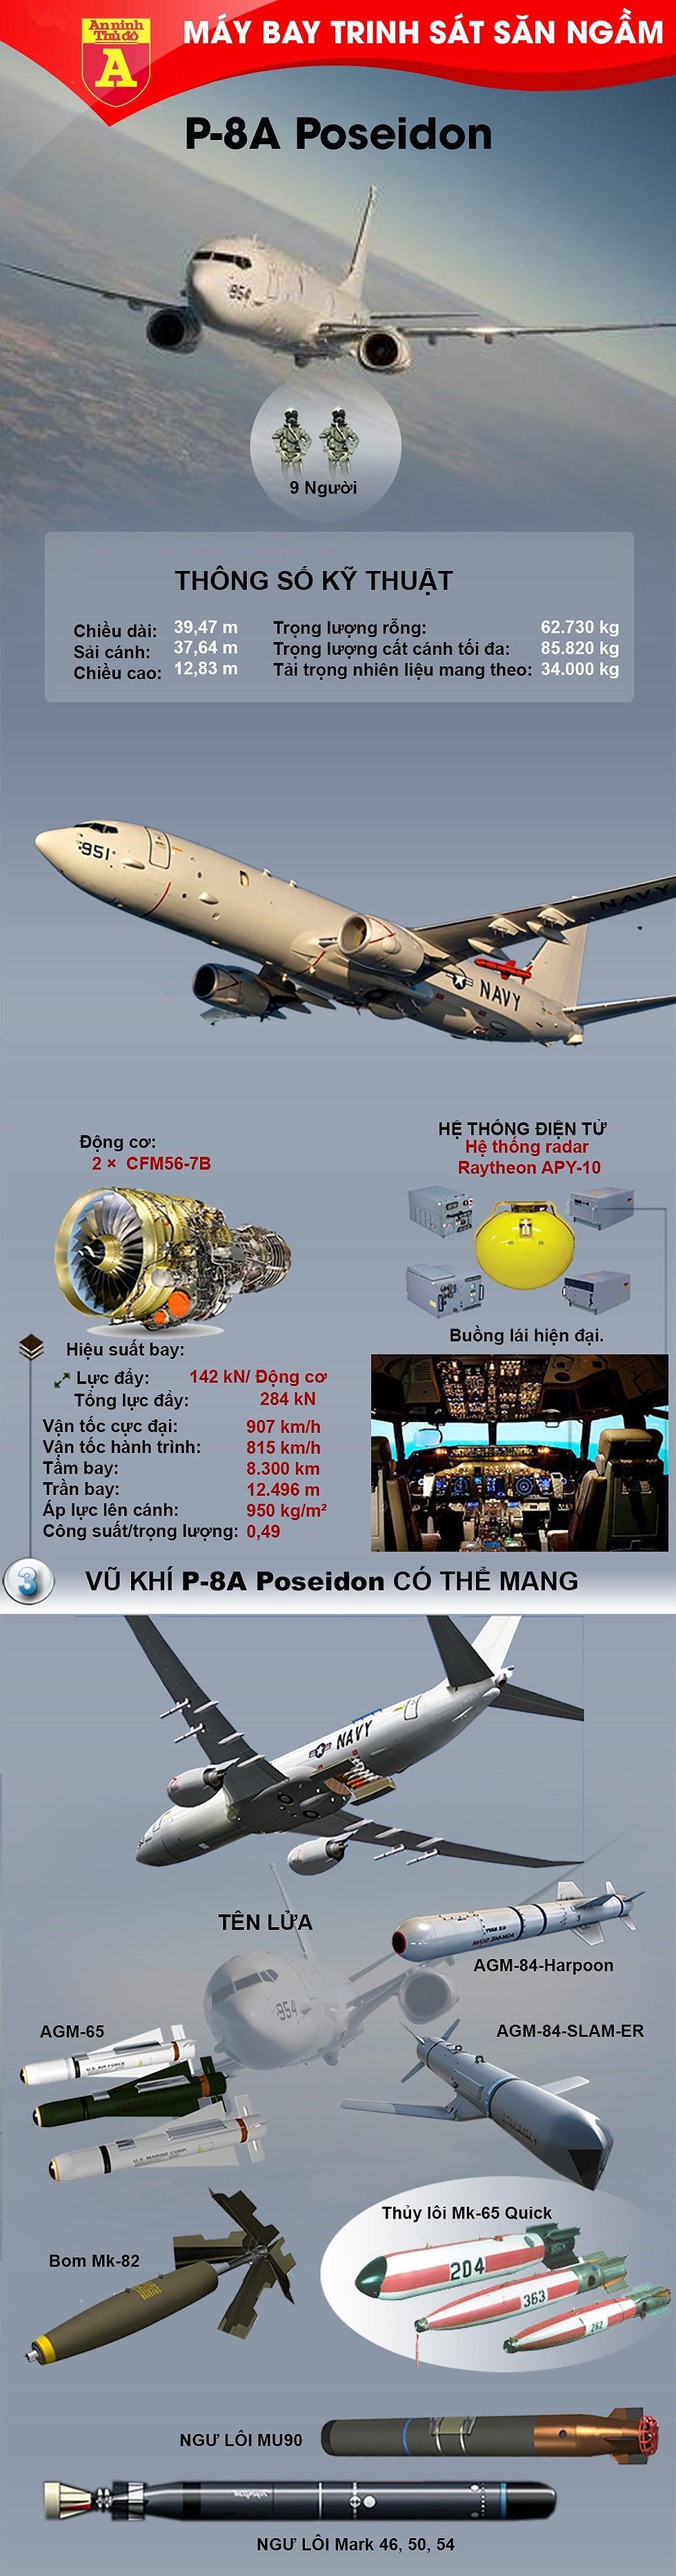 [Infographics] Không bắn hạ "thần biển" P-8A Poseidon Mỹ, pha né đòn đầy khôn ngoan của Iran - Ảnh 1